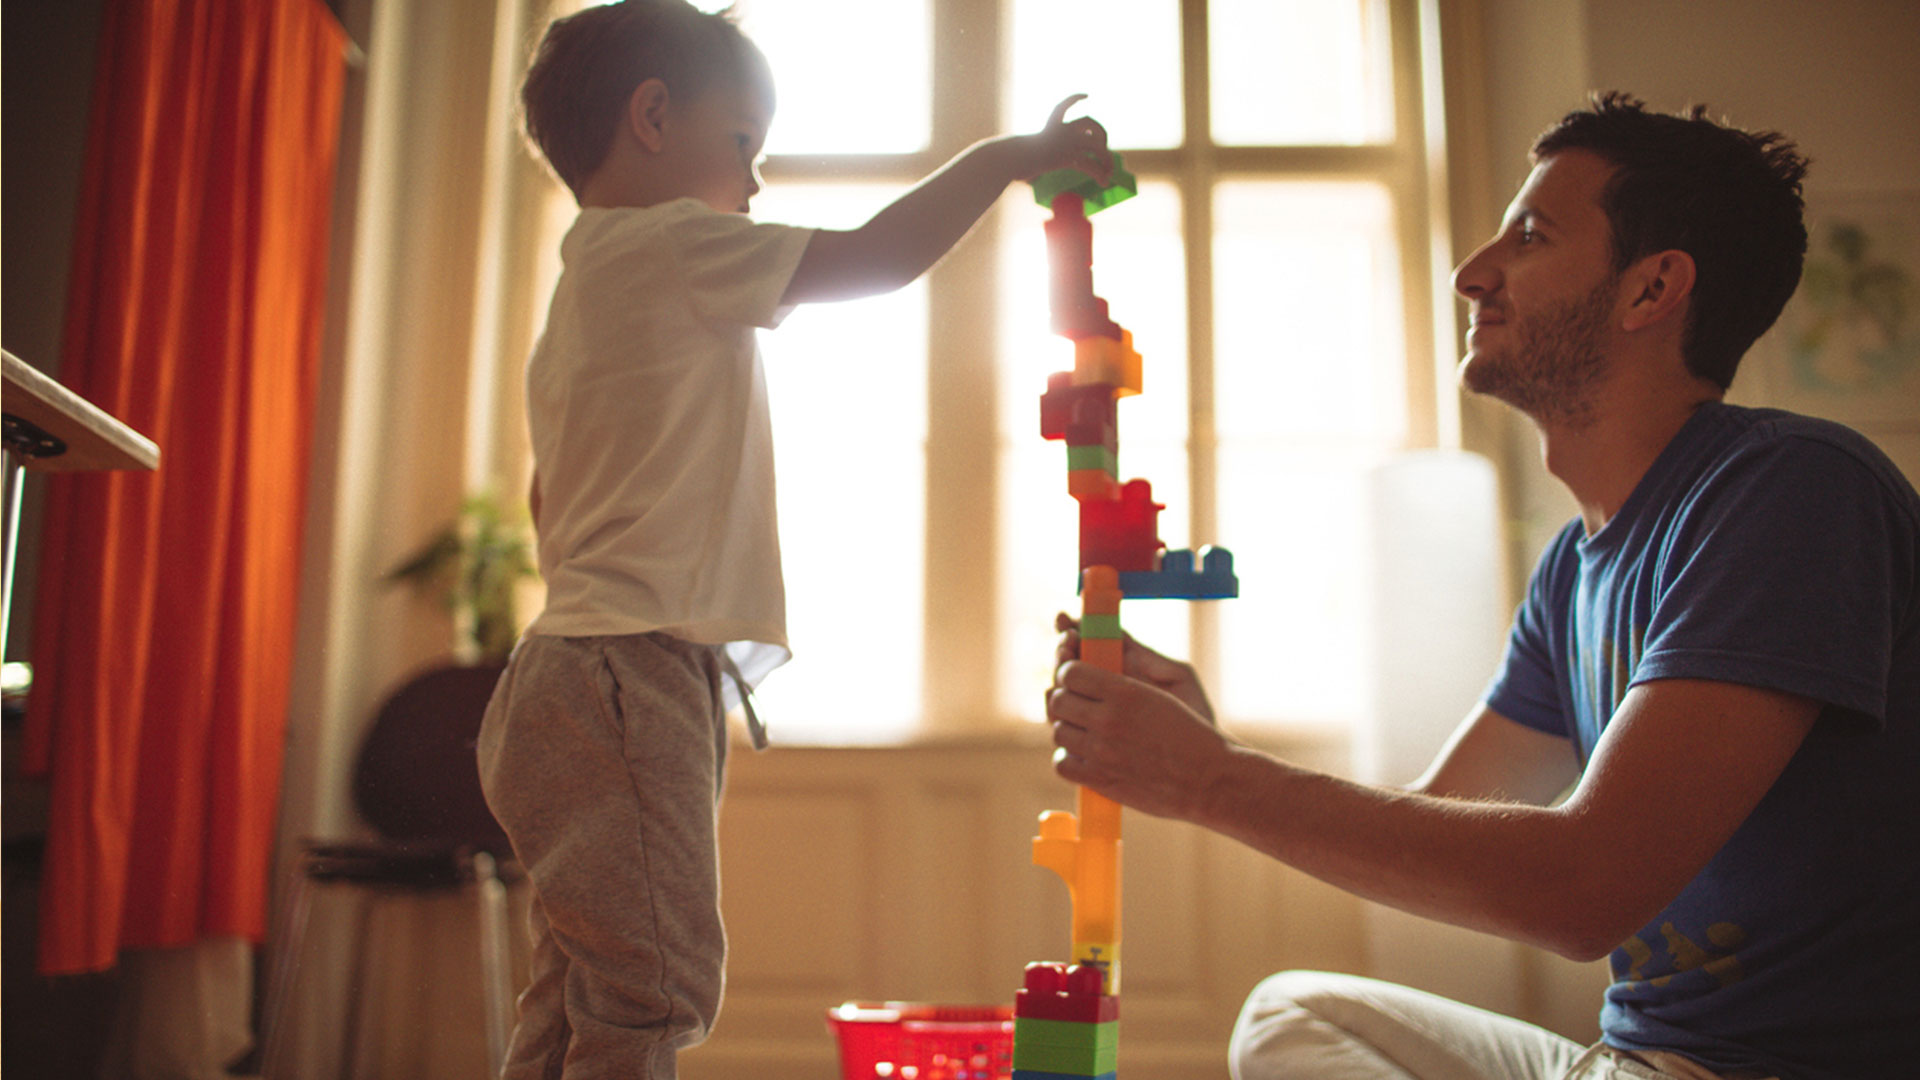 Autonomia: Pai e filho brincam de blocos de montar coloridos